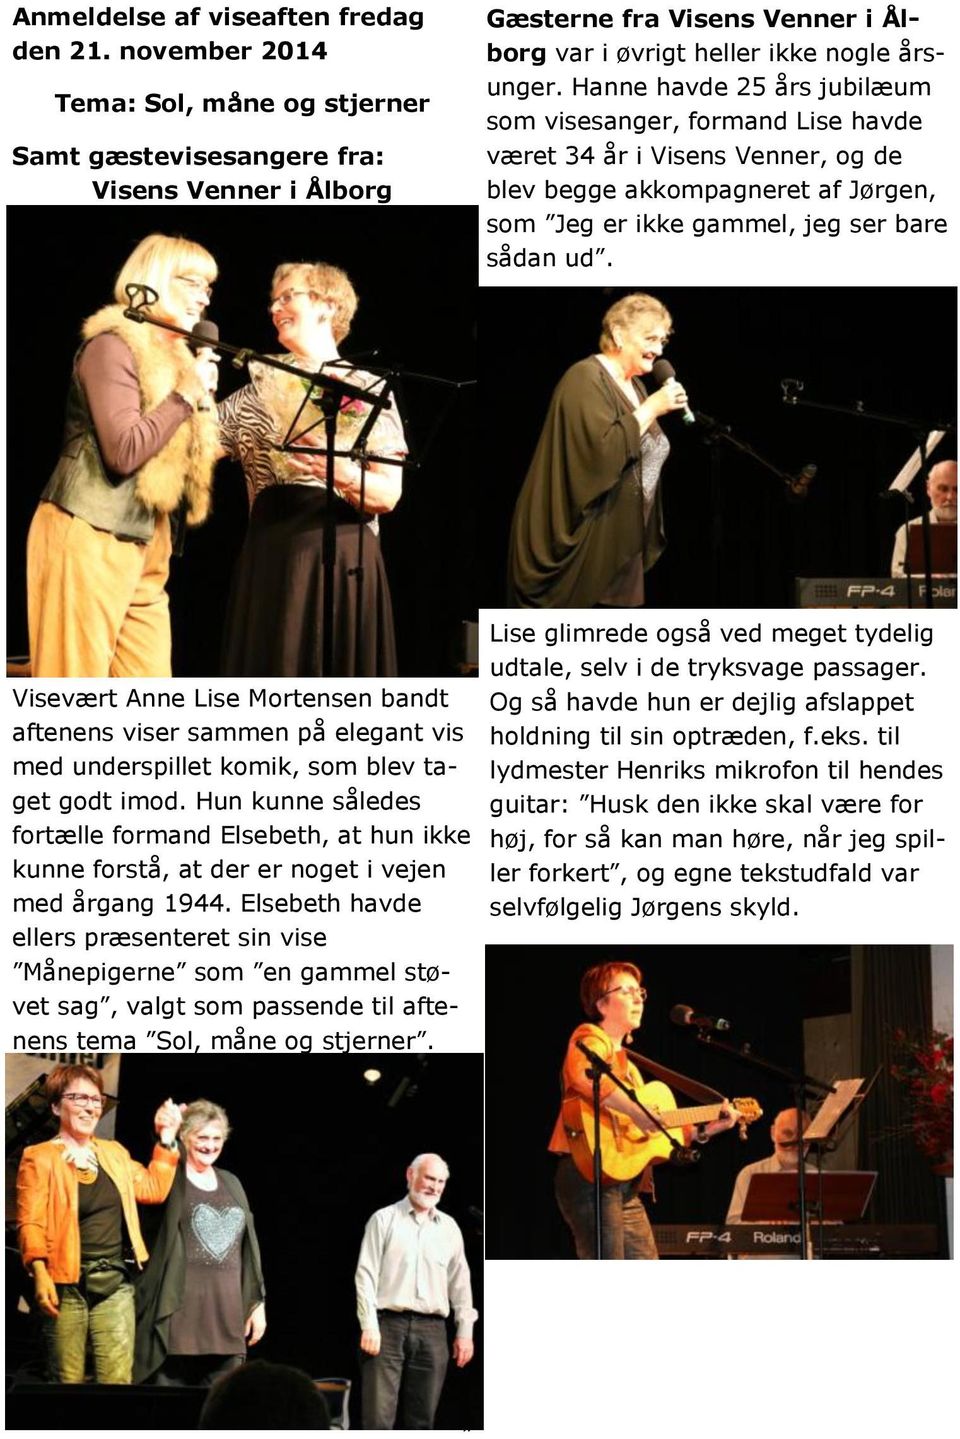 Hanne havde 25 års jubilæum som visesanger, formand Lise havde været 34 år i Visens Venner, og de blev begge akkompagneret af Jørgen, som Jeg er ikke gammel, jeg ser bare sådan ud.